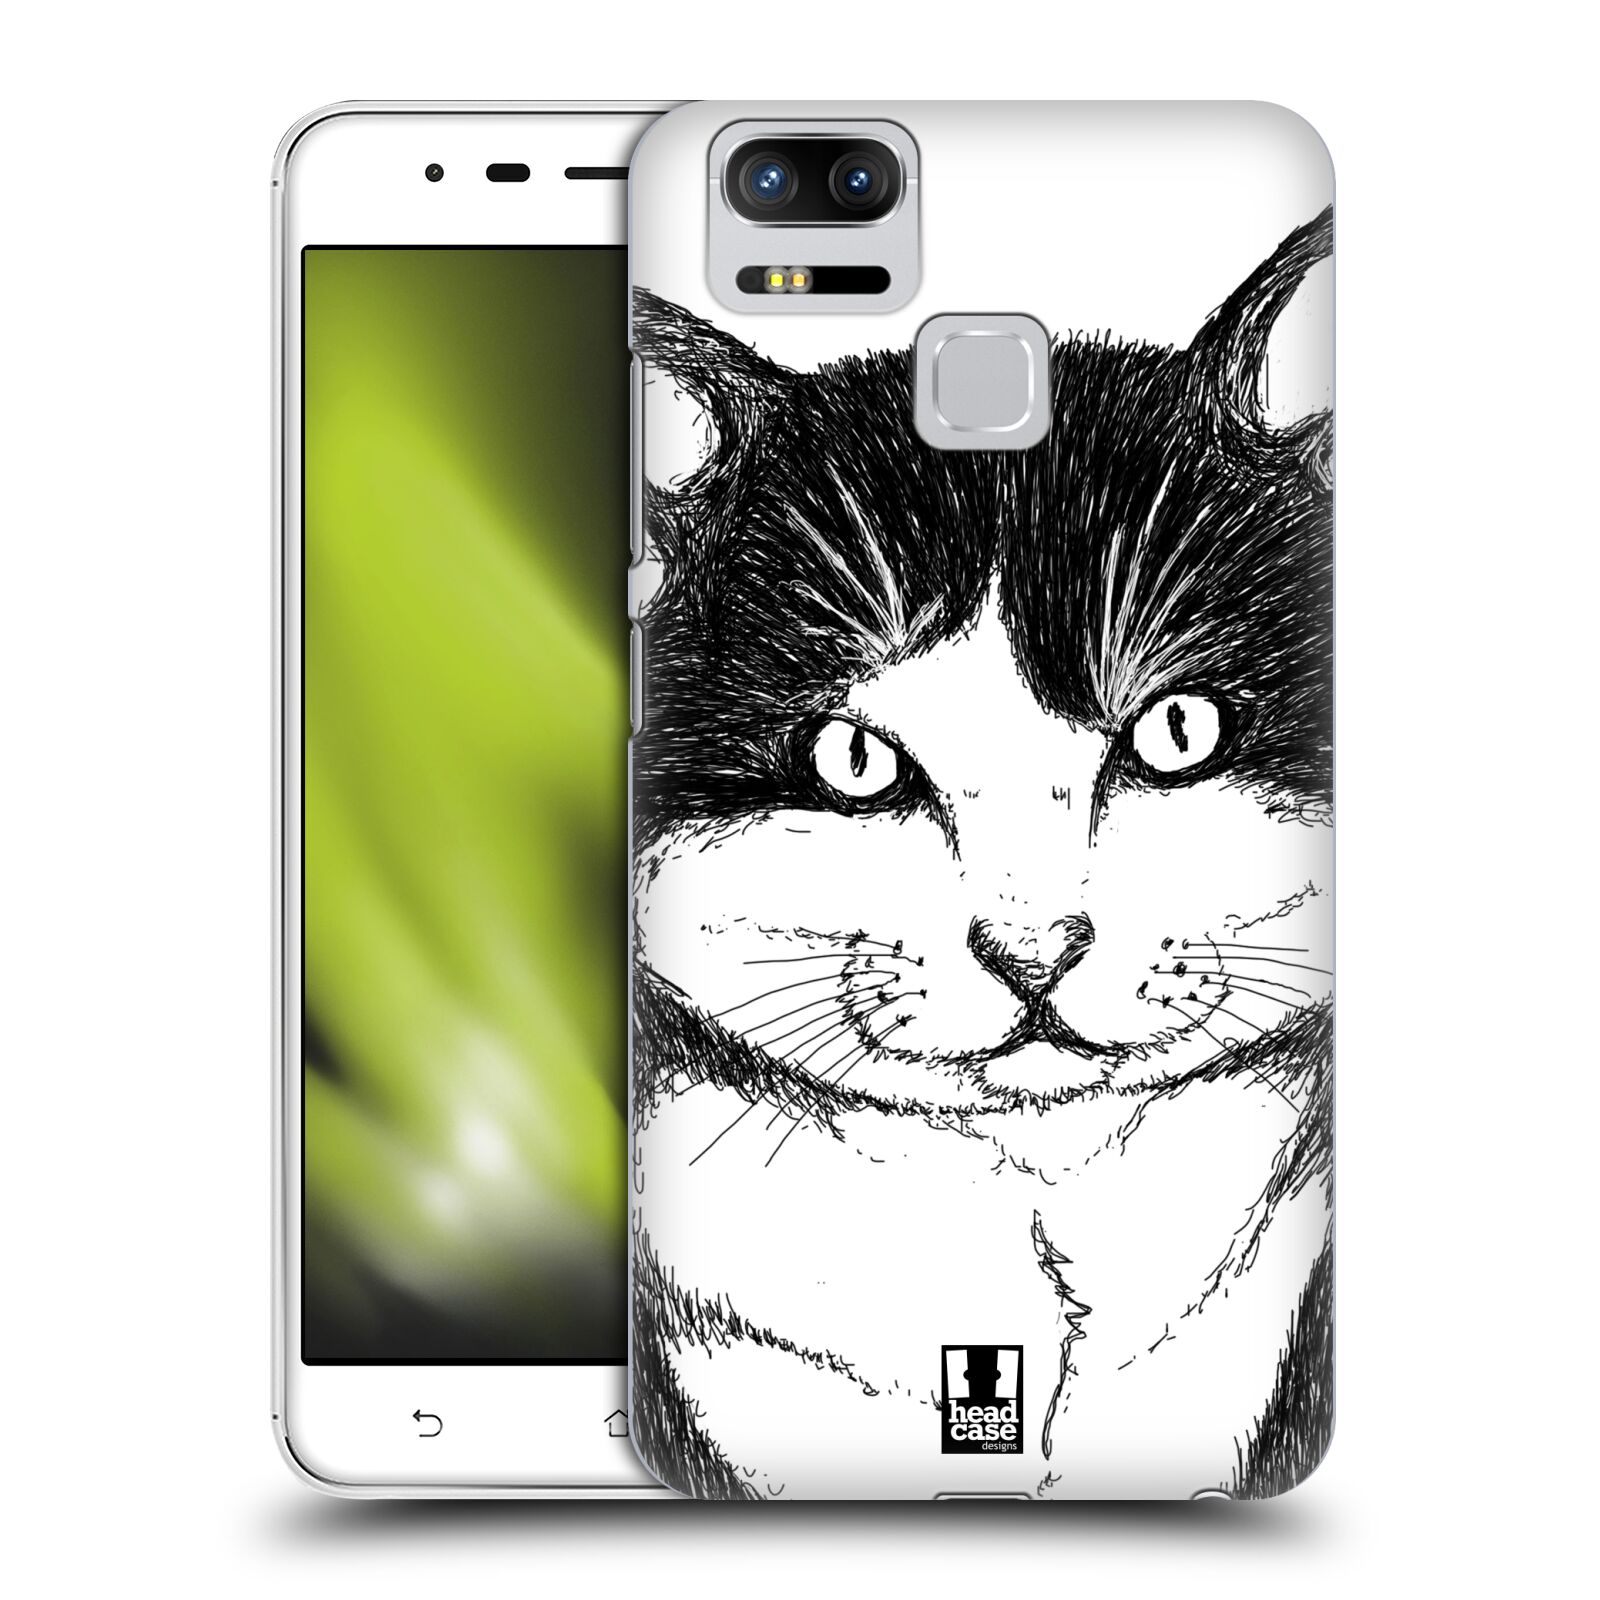 HEAD CASE plastový obal na mobil Asus Zenfone 3 Zoom ZE553KL vzor Kreslená zvířátka černá a bílá kočka